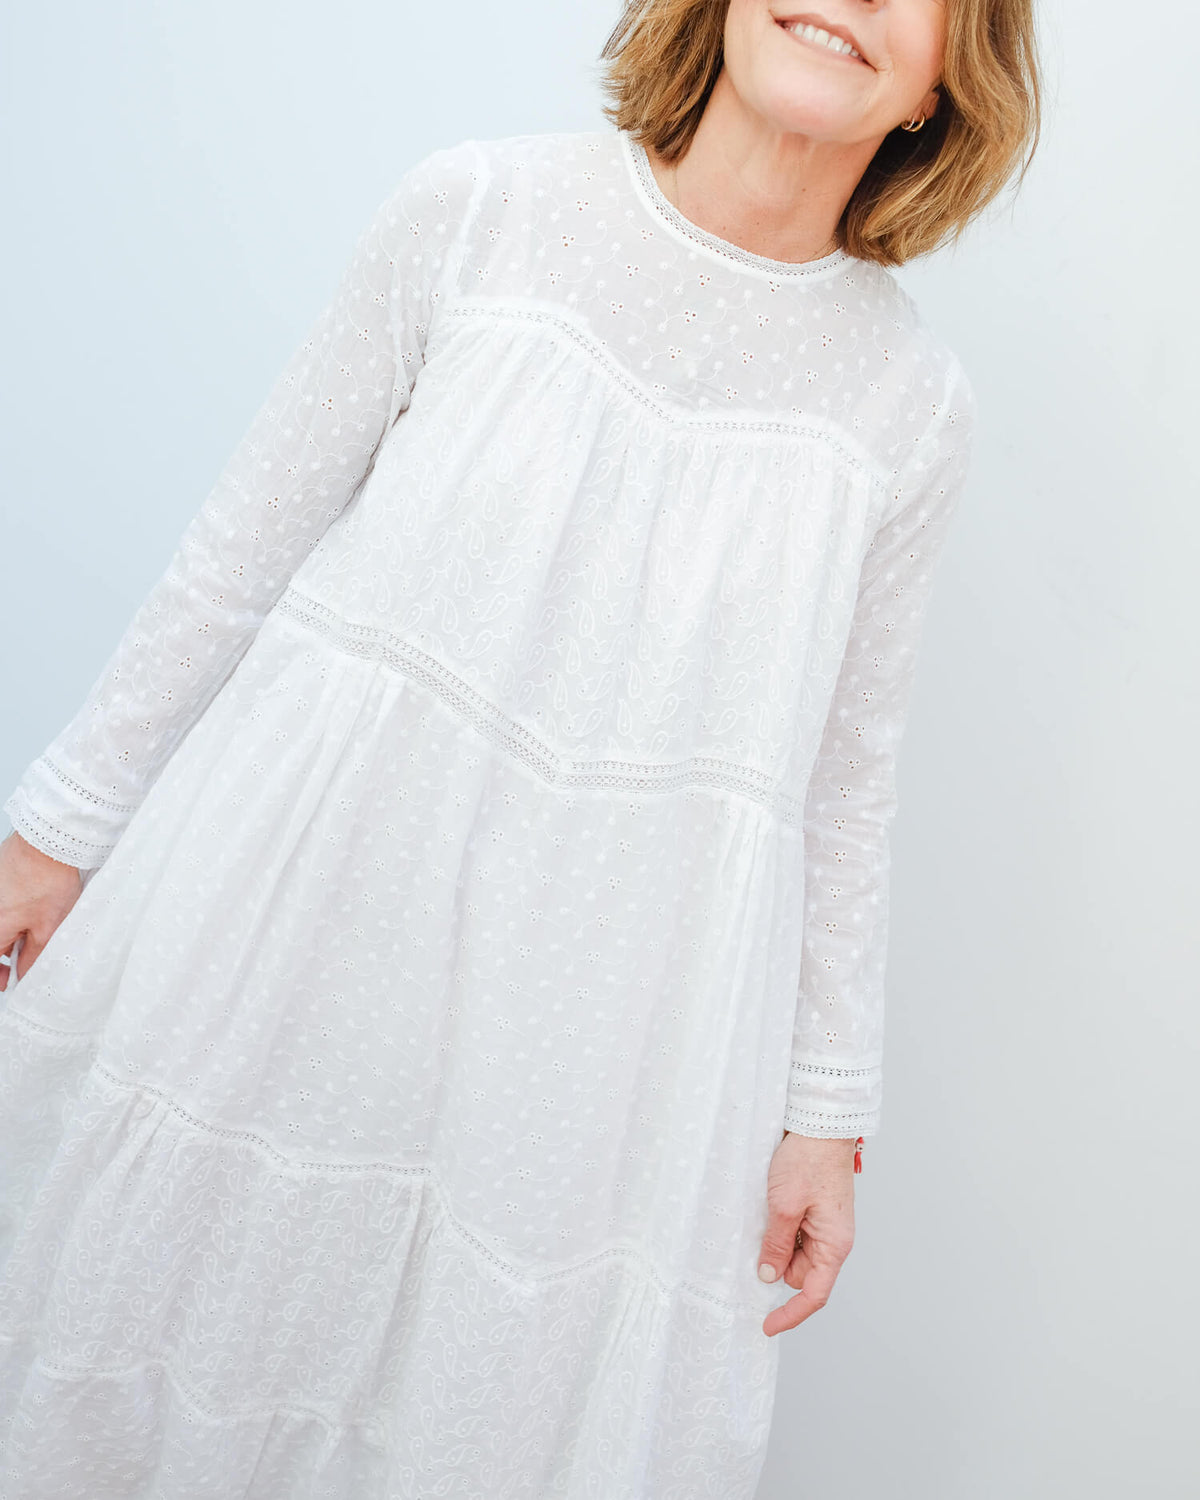 L&H Raison dress in white lace